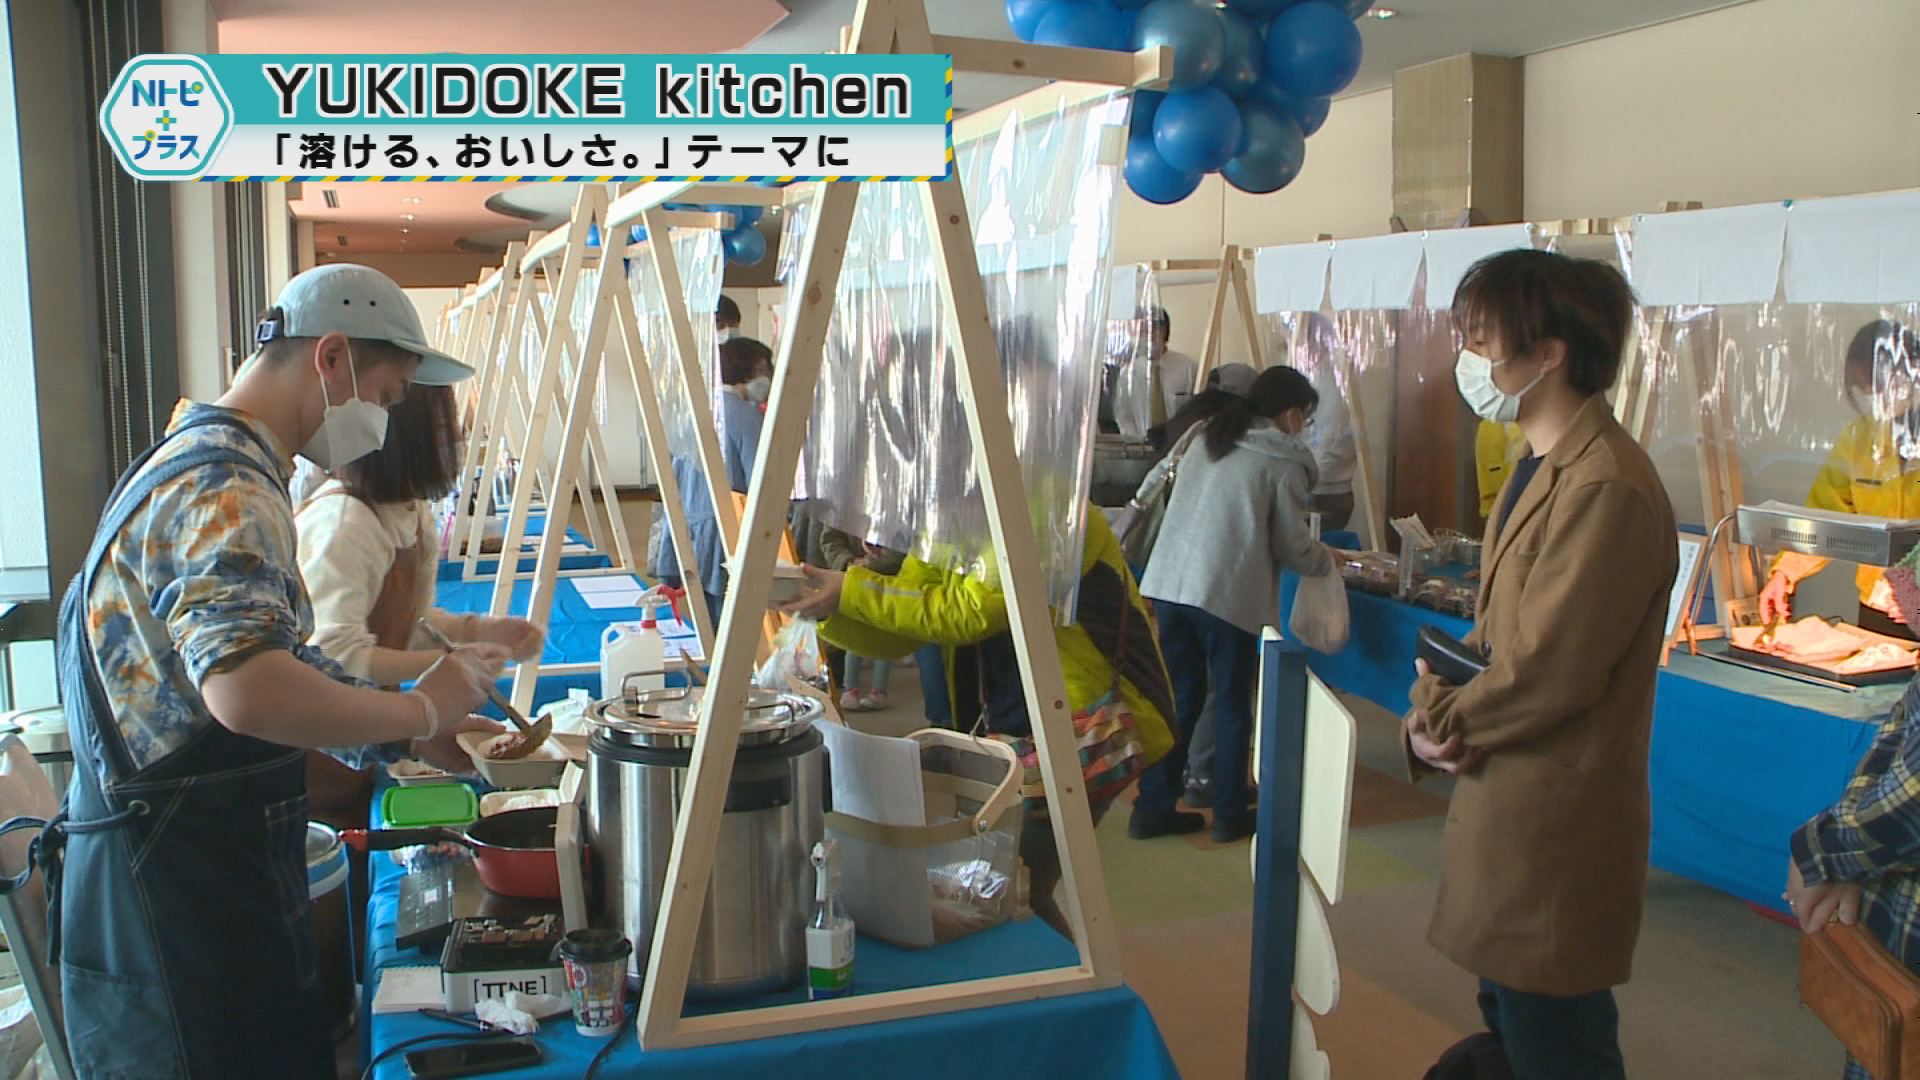 「YUKIDOKE kitchen」「溶ける、おいしさ。」テーマに